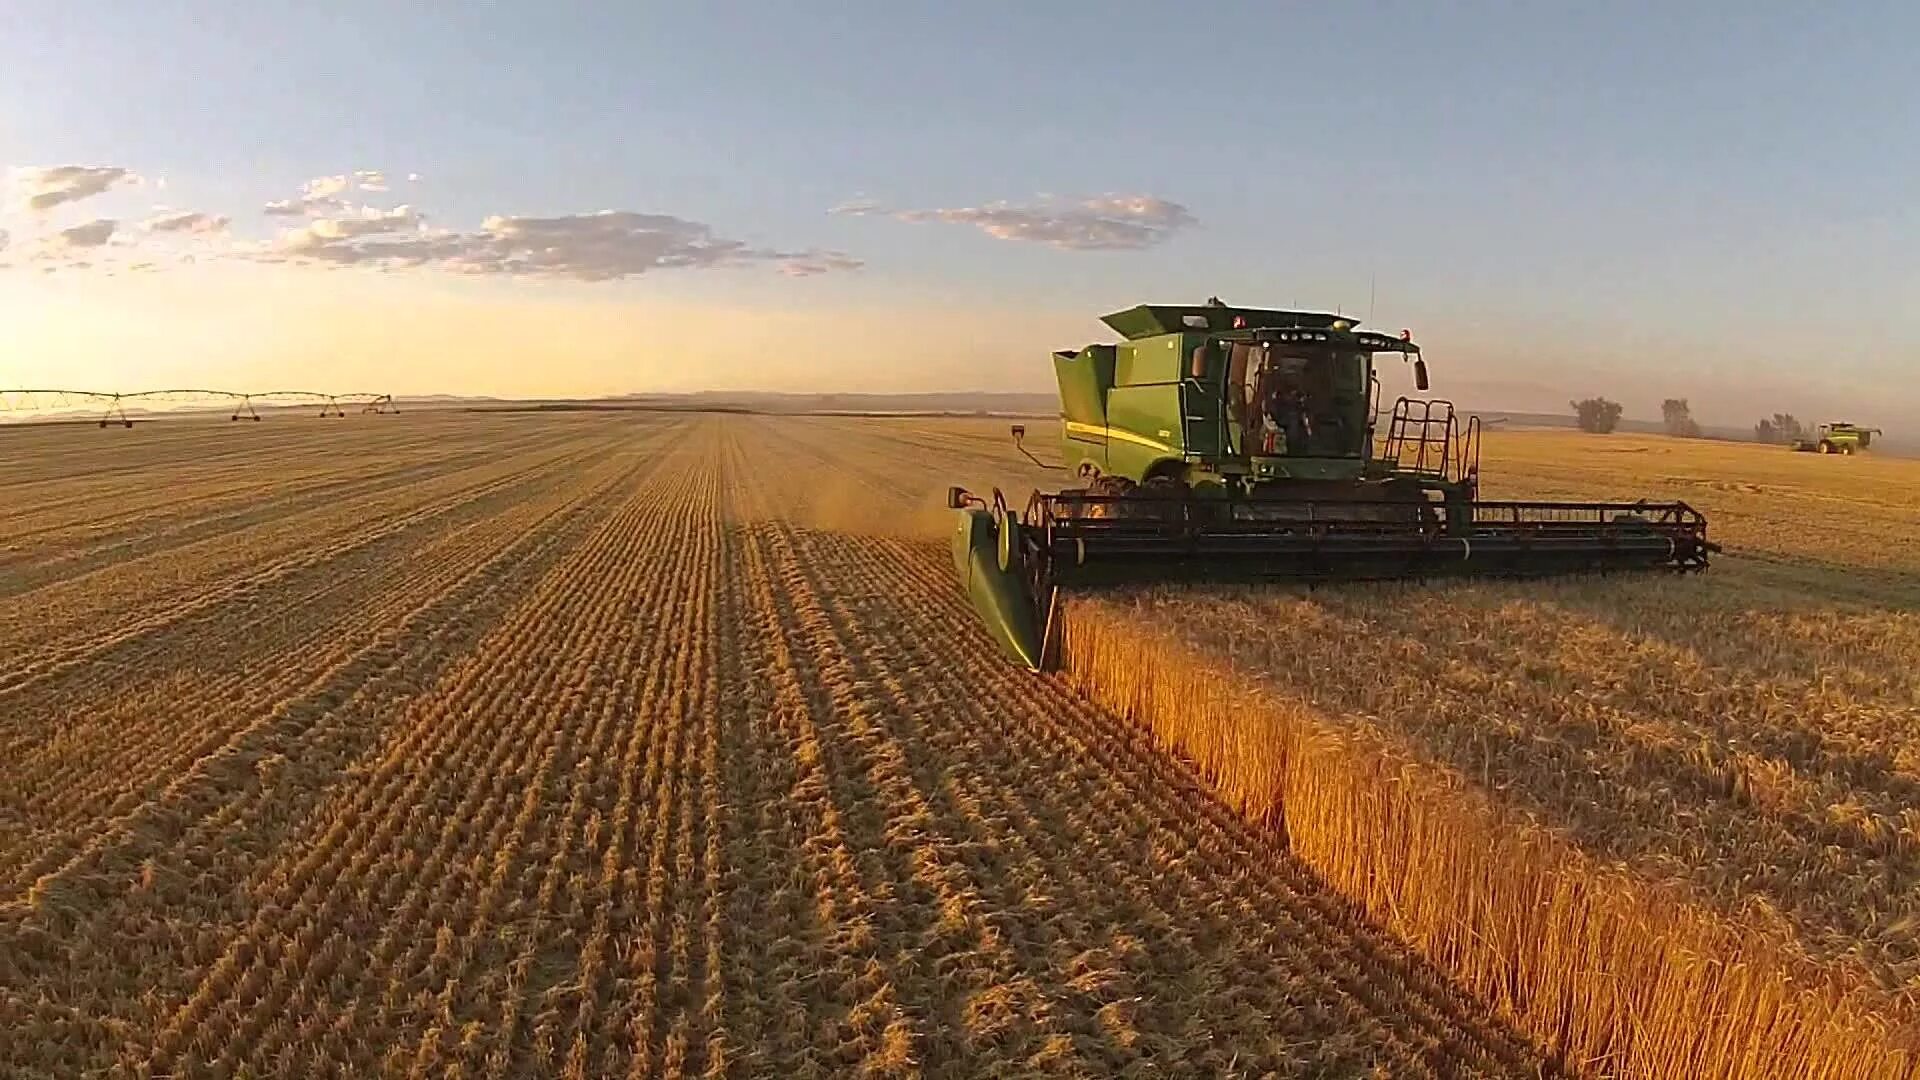 Сбор урожая. Сельское хозяйство урожай. Сбор пшеницы. Комбайн в поле. Field processing